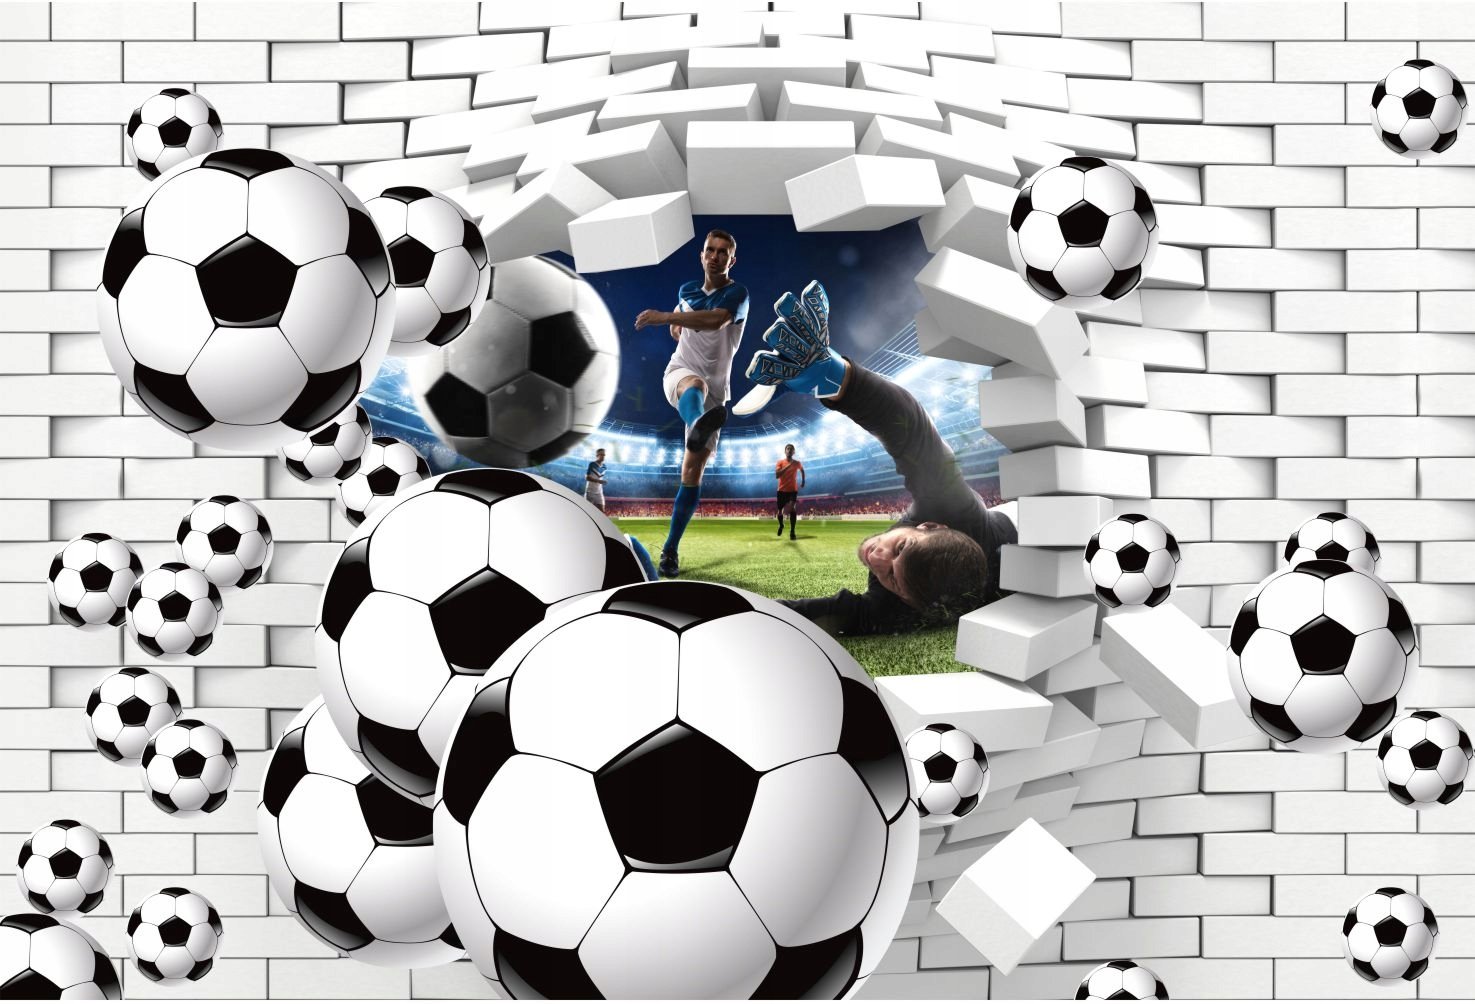 Игры футбольные мячи 3. Футбольная тематика. Фотообои спортивная тематика. Футбольный мяч. Фотообои на стену футбольная тематика.